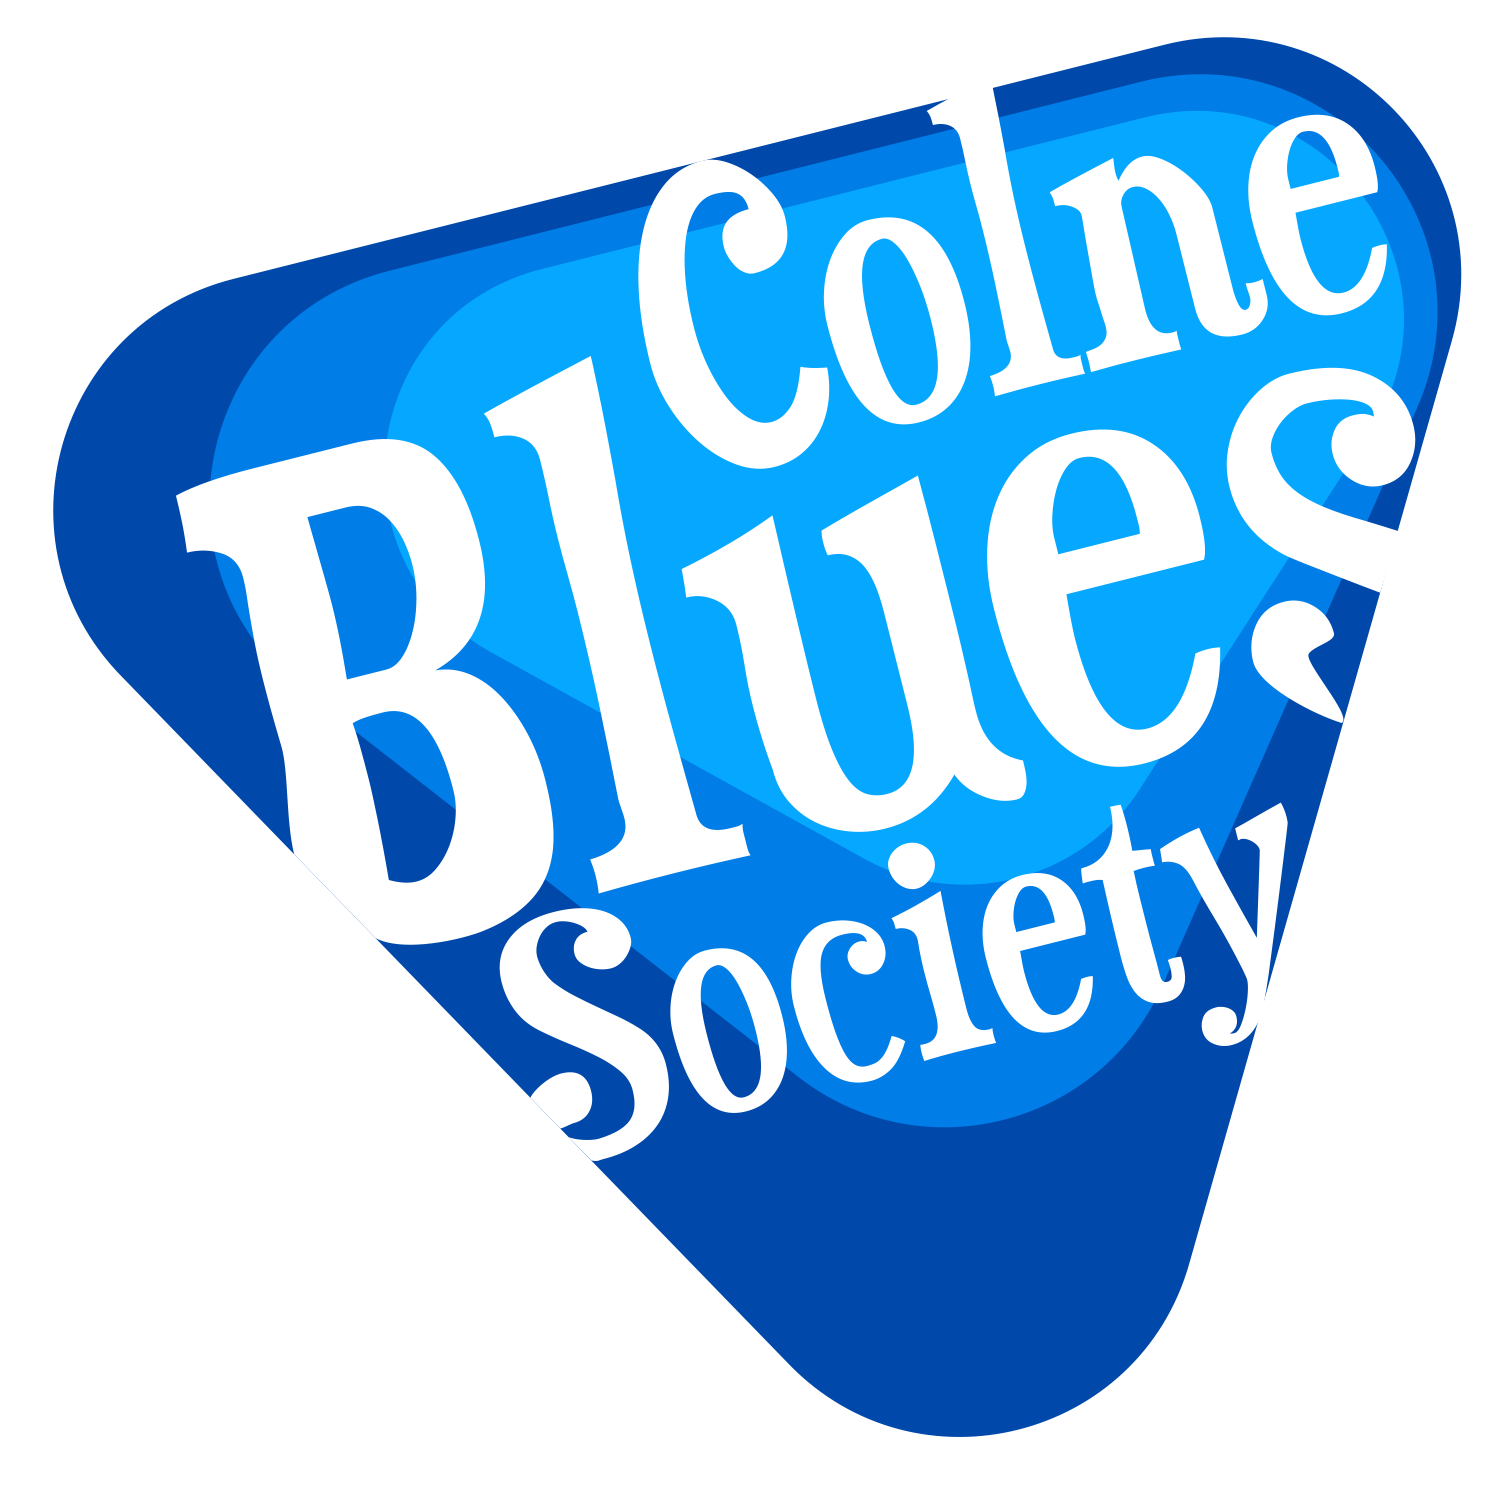 Colne Blues Society